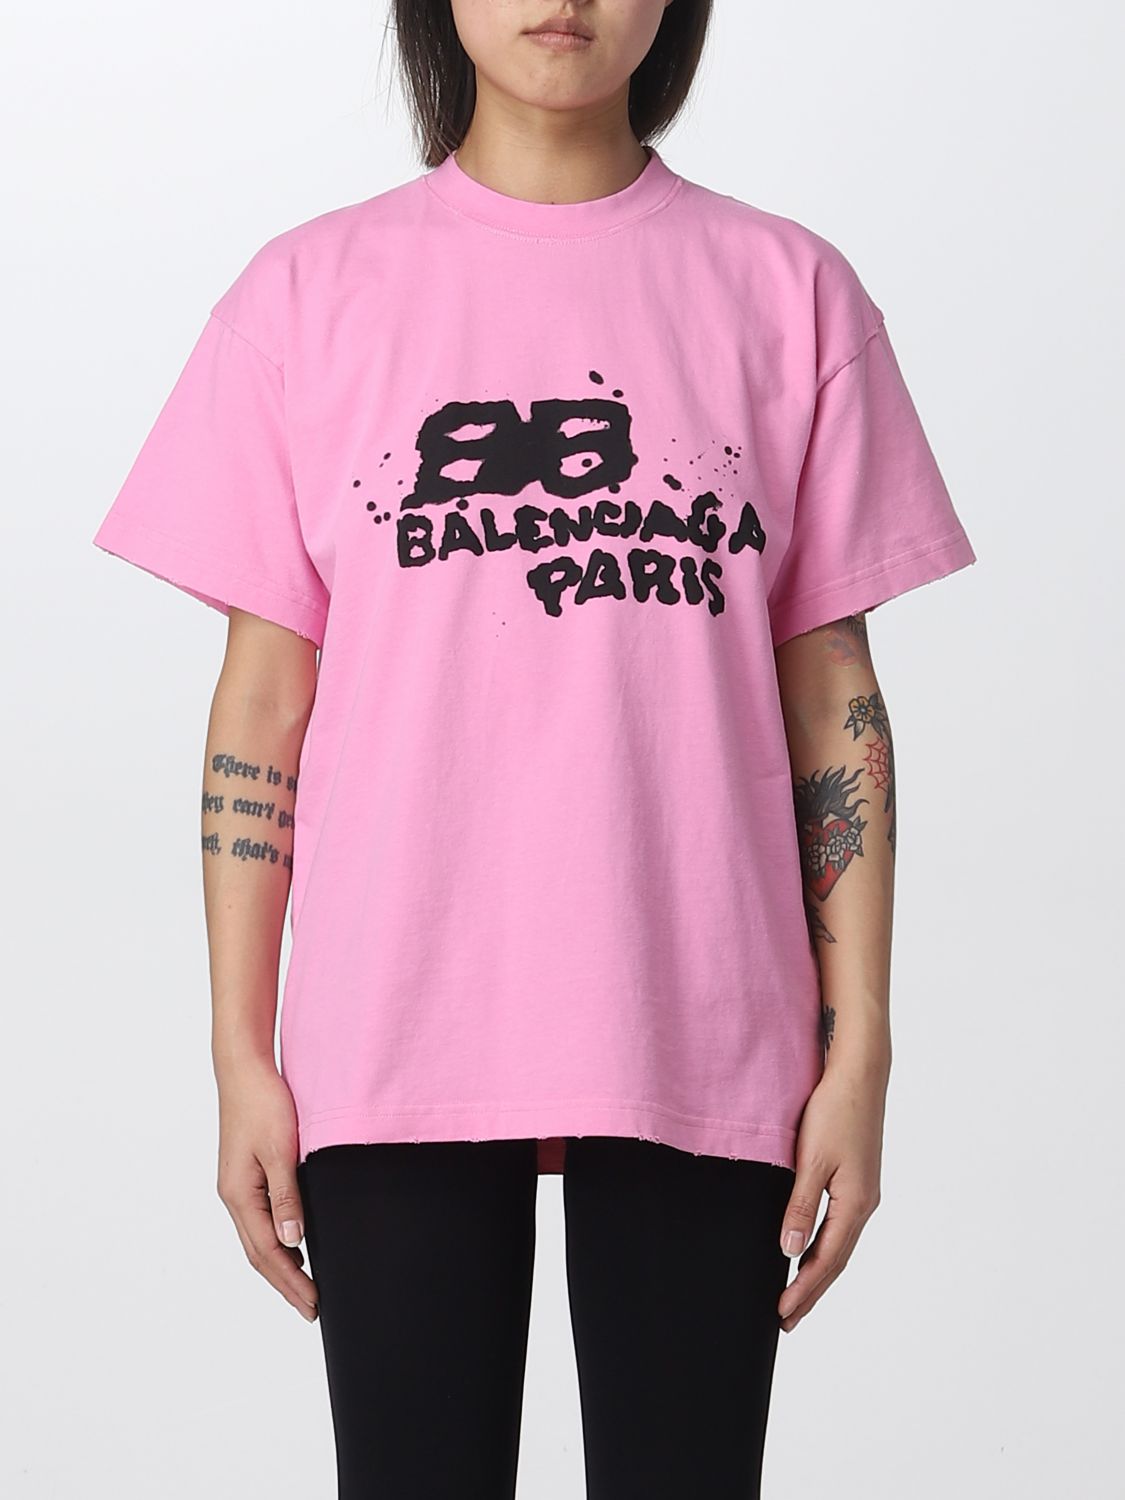 Chi tiết với hơn 68 về balenciaga t shirt pink logo mới nhất